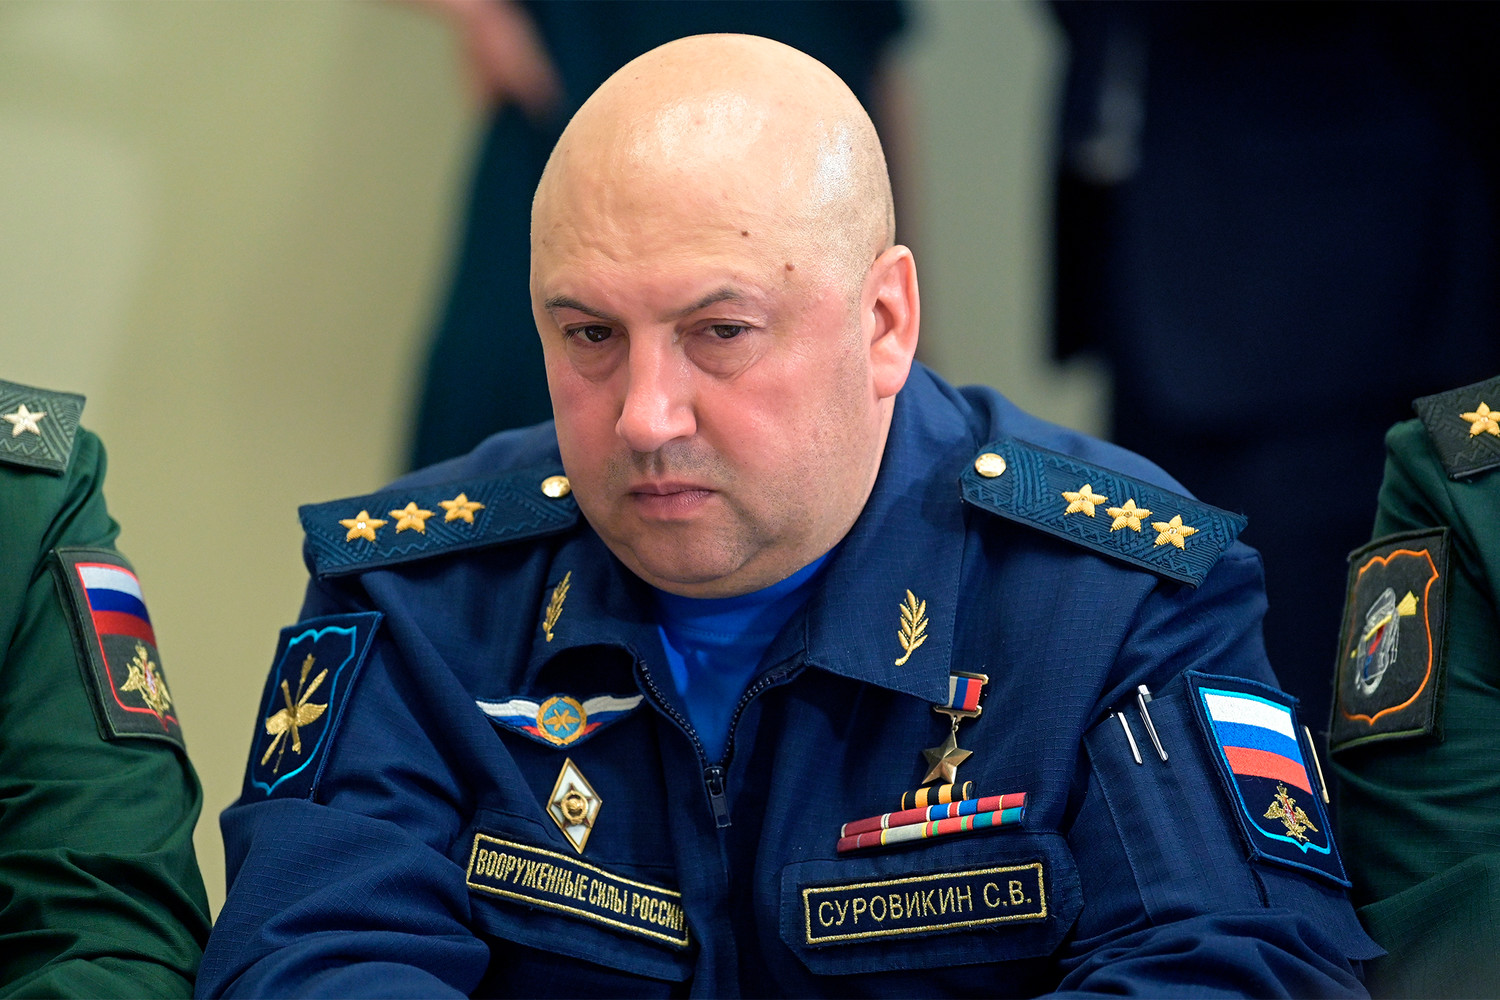 Стало известно о незавидной судьбе Сергея Суровикина. Против Генерала Армагеддон запущена программа по снижению его авторитета